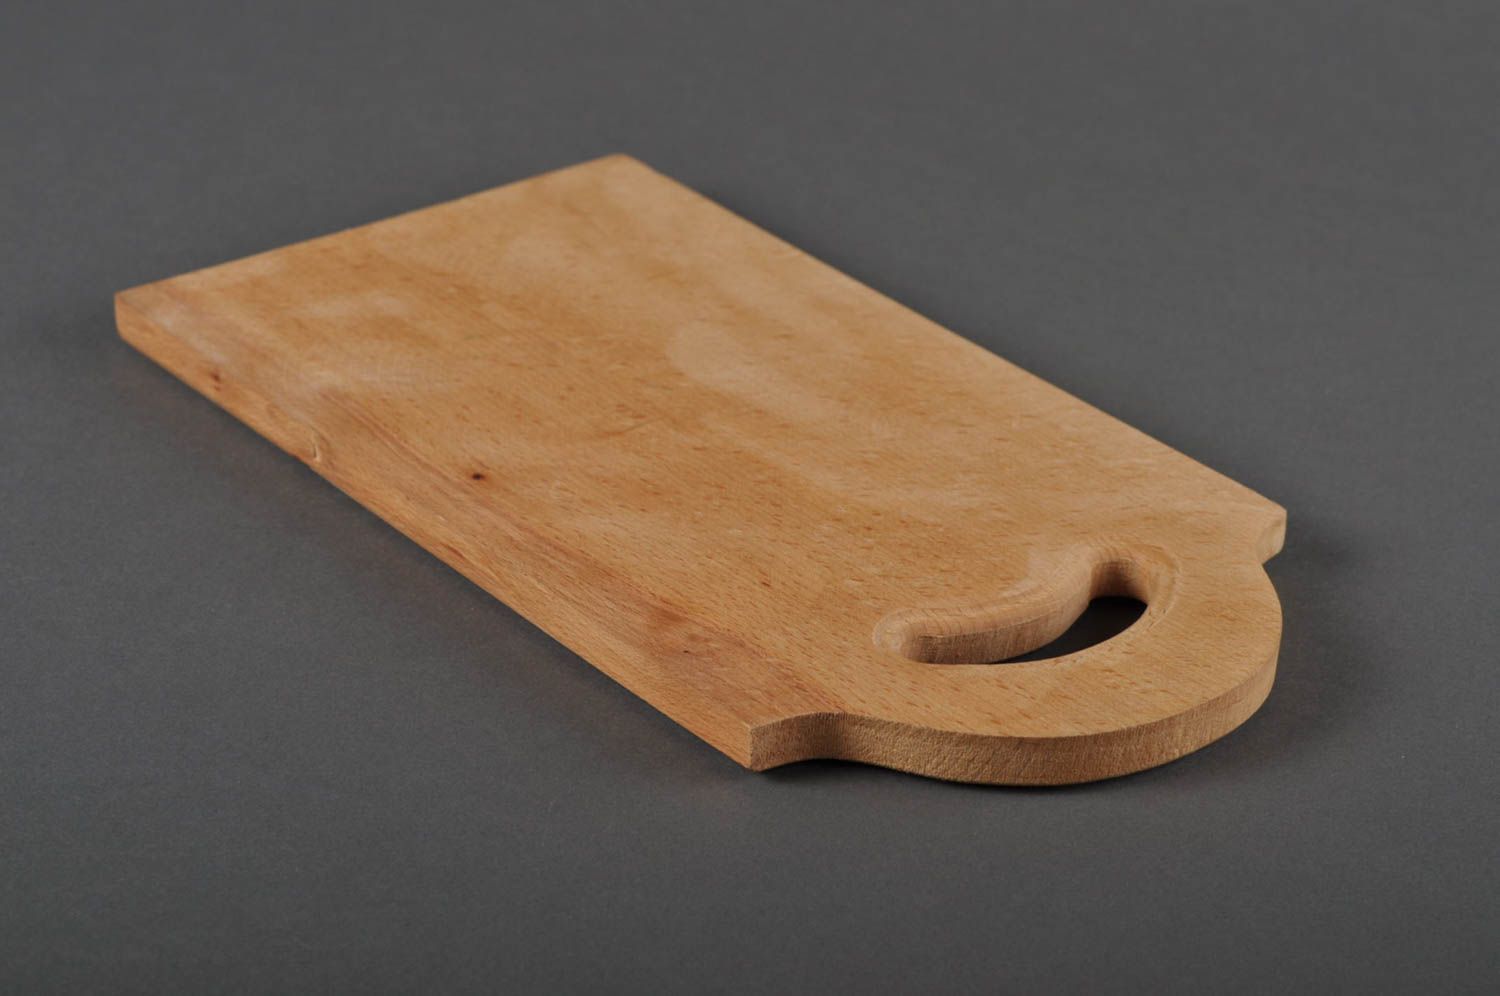 Handmade wooden cutting board chopping board design kitchen decoration photo 4